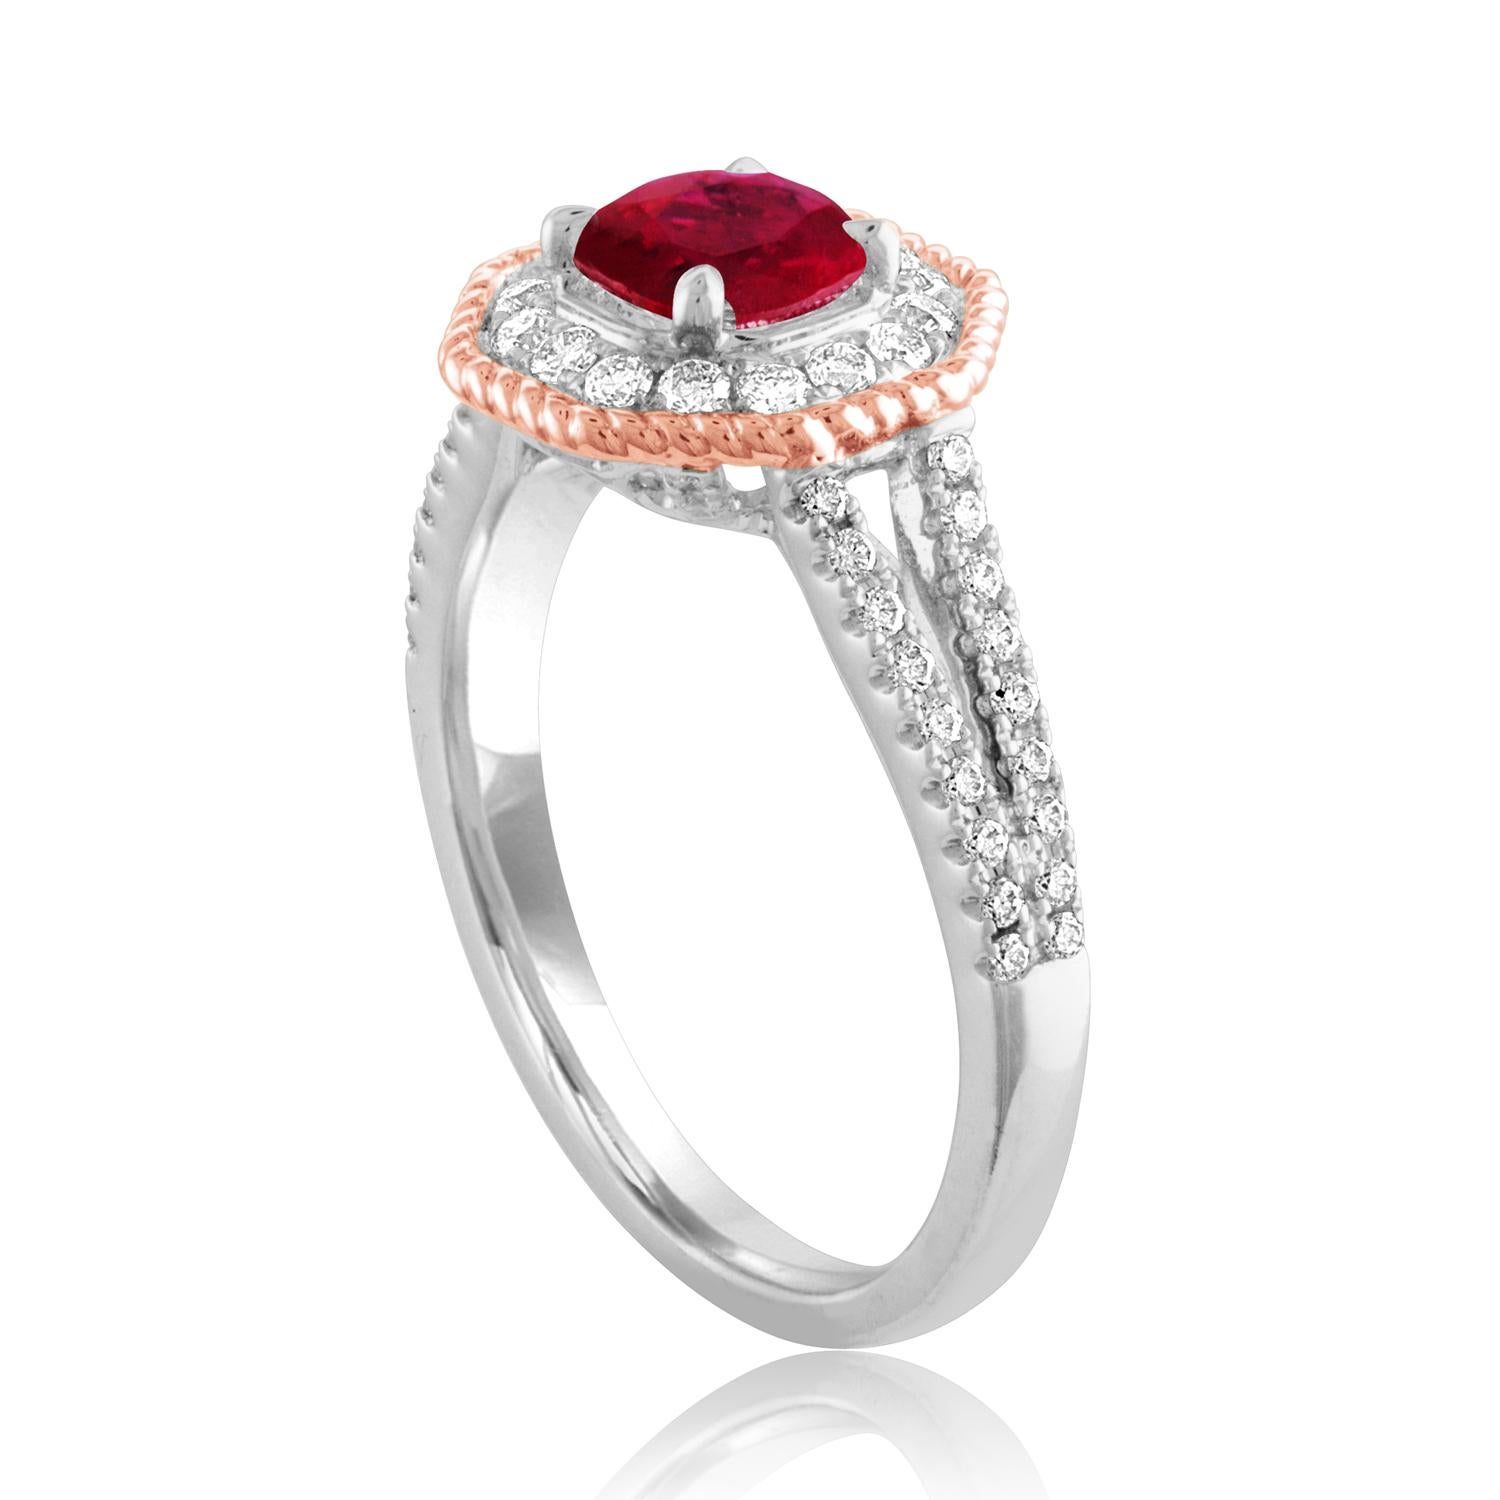 Schöne Octagon Halo Zwei-Ton-Ring
Der Ring ist aus 18K Weiß- und Roségold
Der Mittelstein ist ein runder Rubin 1.05 Karat
Der Ruby ist AGL-zertifiziert Beheizt
Es sind 0.68 Karat in Diamanten F/G VS/SI
Der Ring ist eine Größe 6,5, sizable.
Der Ring